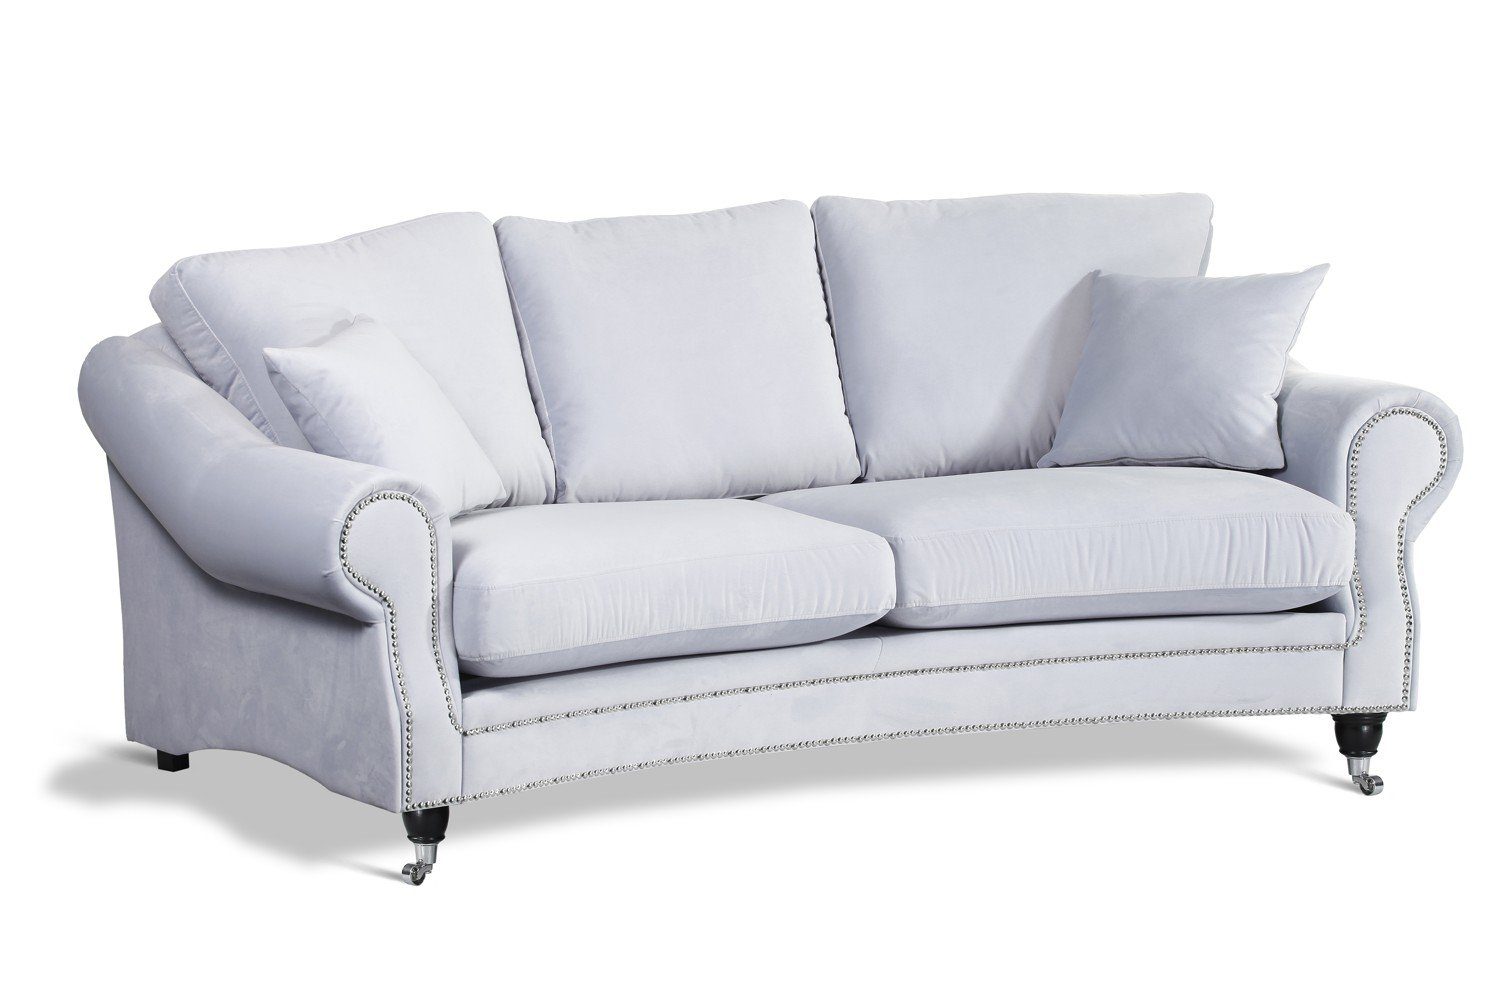 JVmoebel Sofa Textil weißes Sofa luxus Dreisitzer Wohnzimmermöbel Neu, Made in Europe